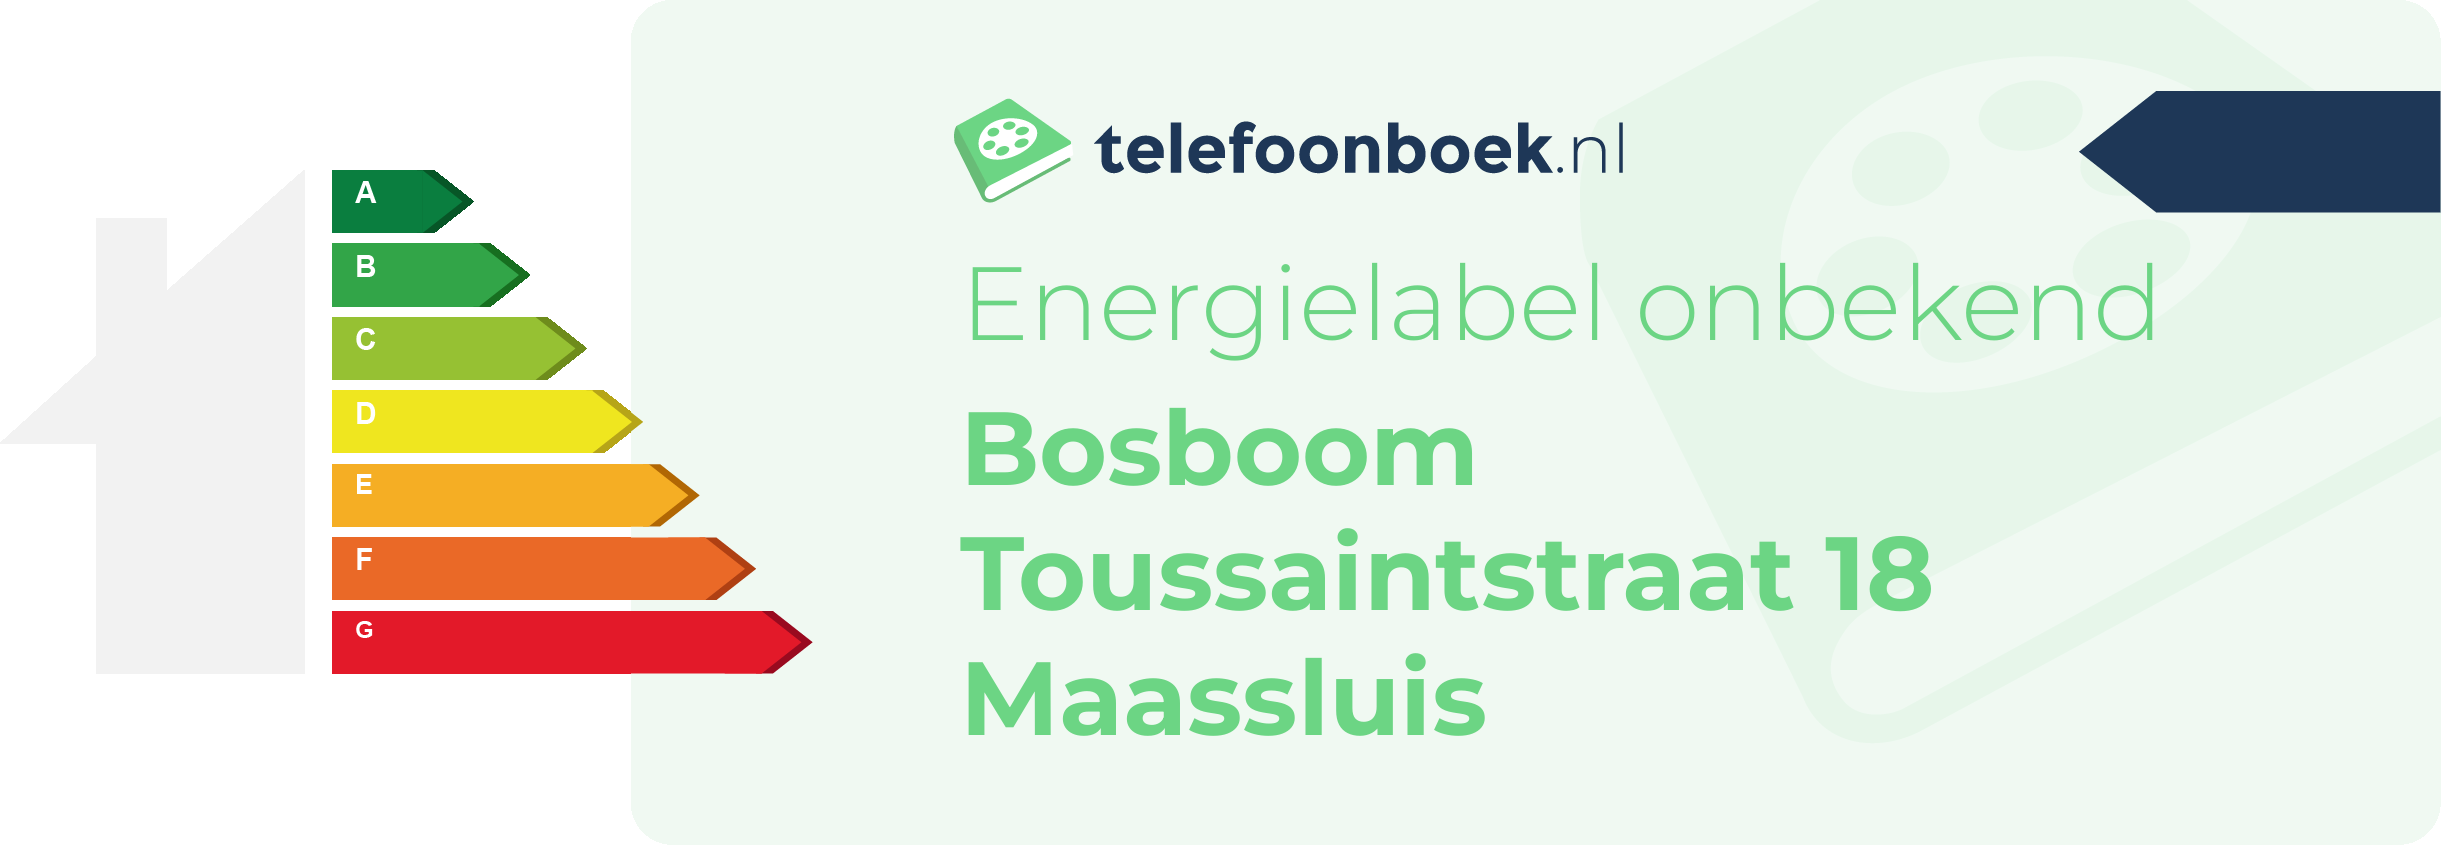 Energielabel Bosboom Toussaintstraat 18 Maassluis